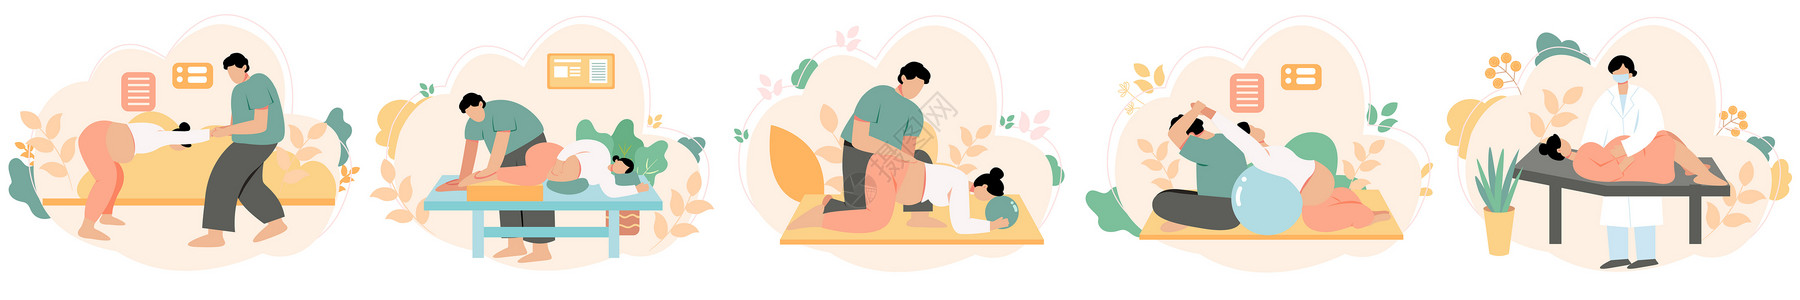 记忆力训练孕妇产前护理训练孕期锻炼svg矢量插画元素插画